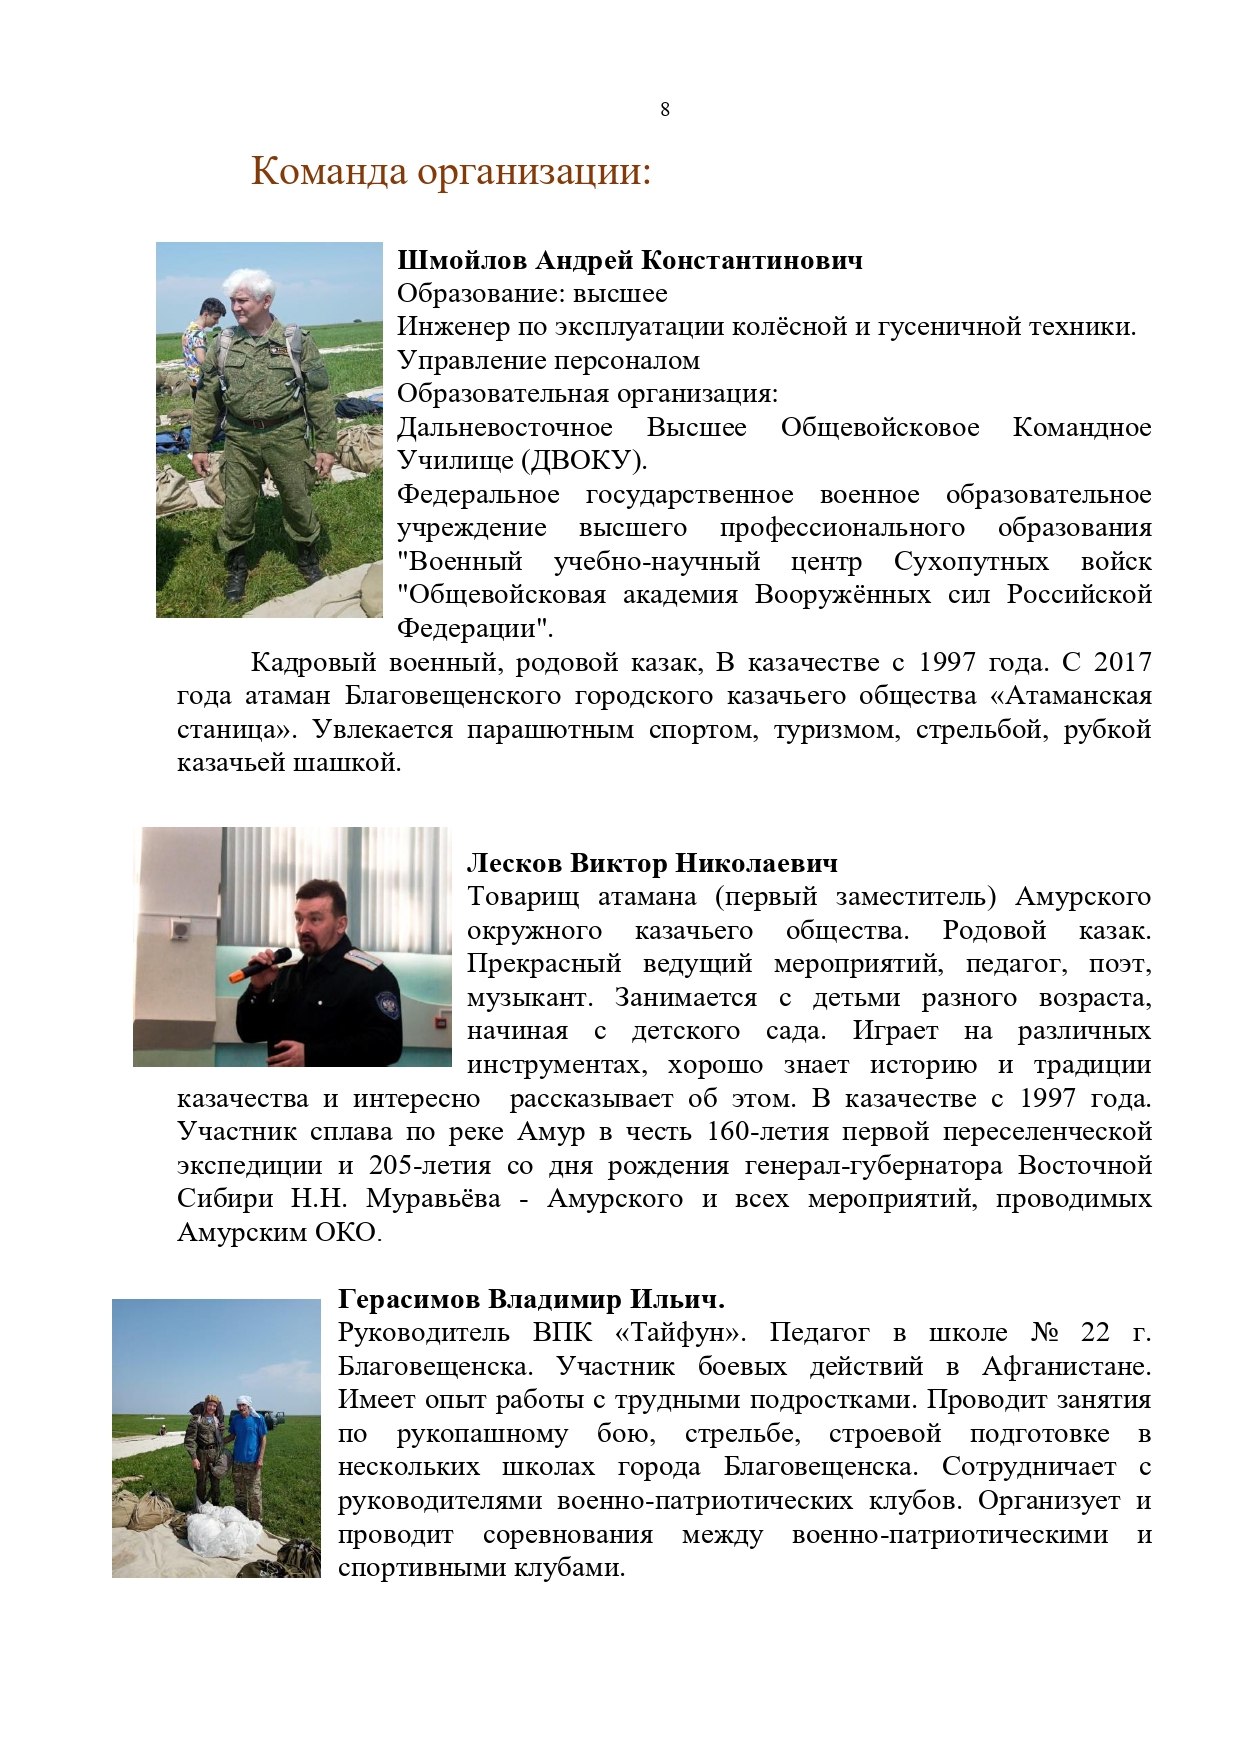 Публичный годовой отчет Амурского окружного казачьего общества за 2019 год Page 0008